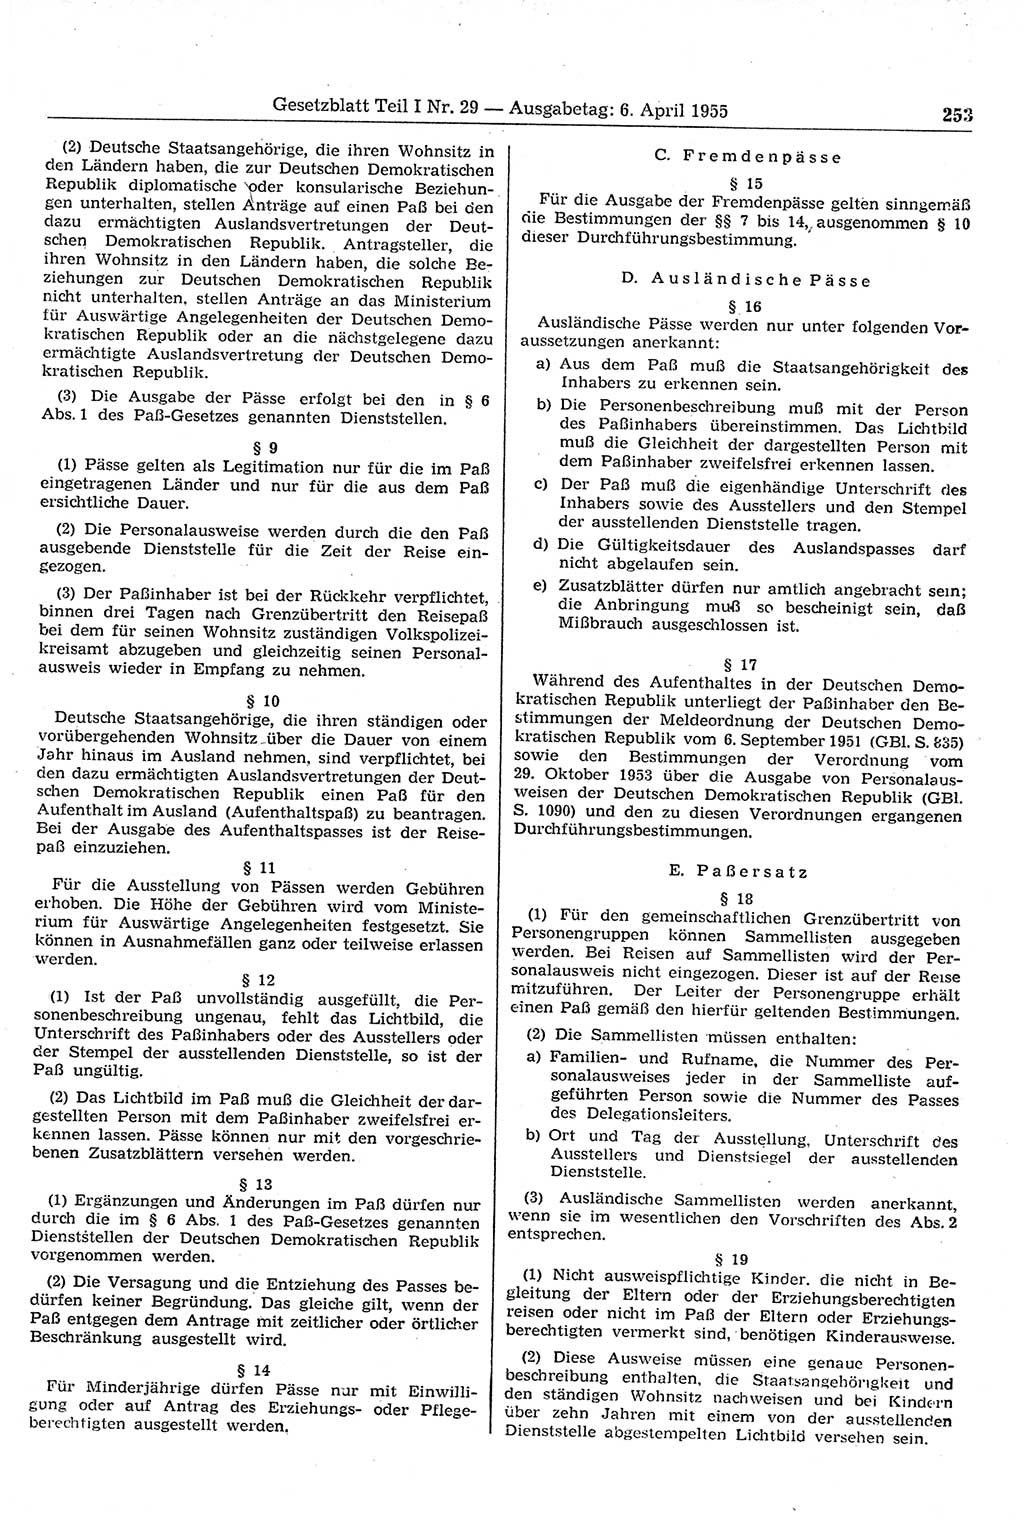 Gesetzblatt (GBl.) der Deutschen Demokratischen Republik (DDR) Teil Ⅰ 1955, Seite 253 (GBl. DDR Ⅰ 1955, S. 253)